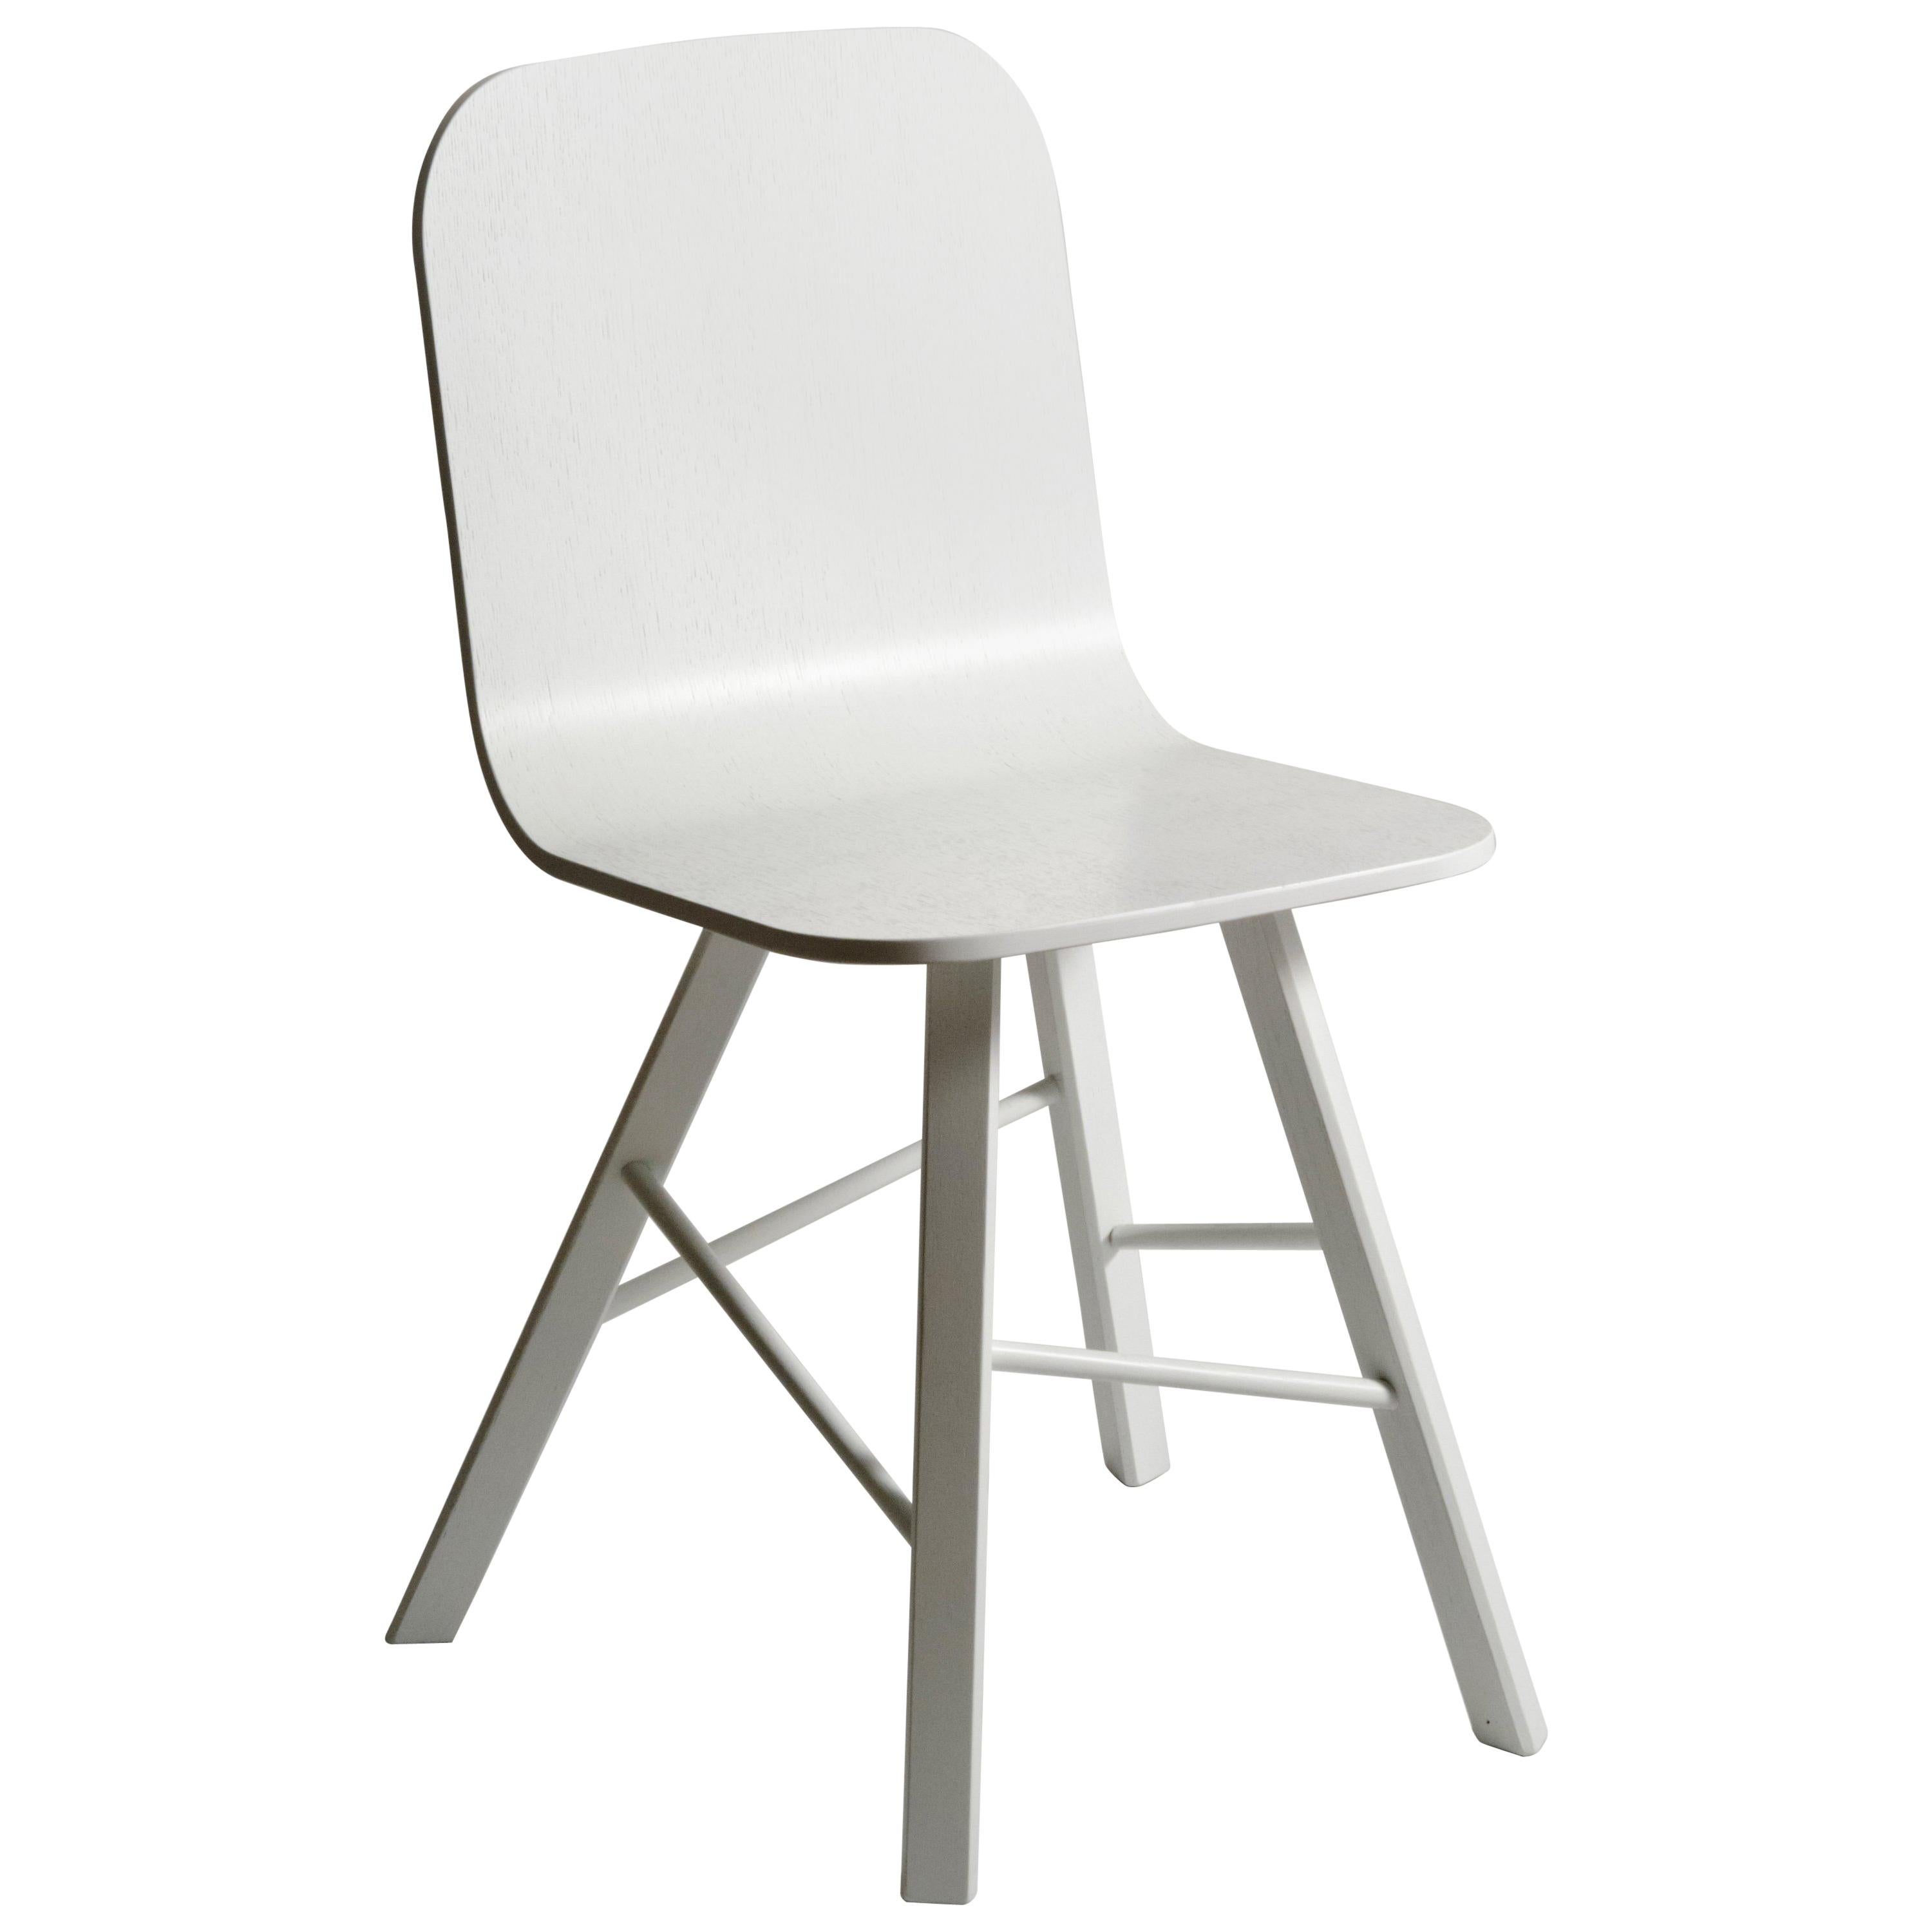 Tria Einfacher Stuhl, Weiße Eiche, minimalistisches Design, ikonisch inspiriert von der Grafikkunst